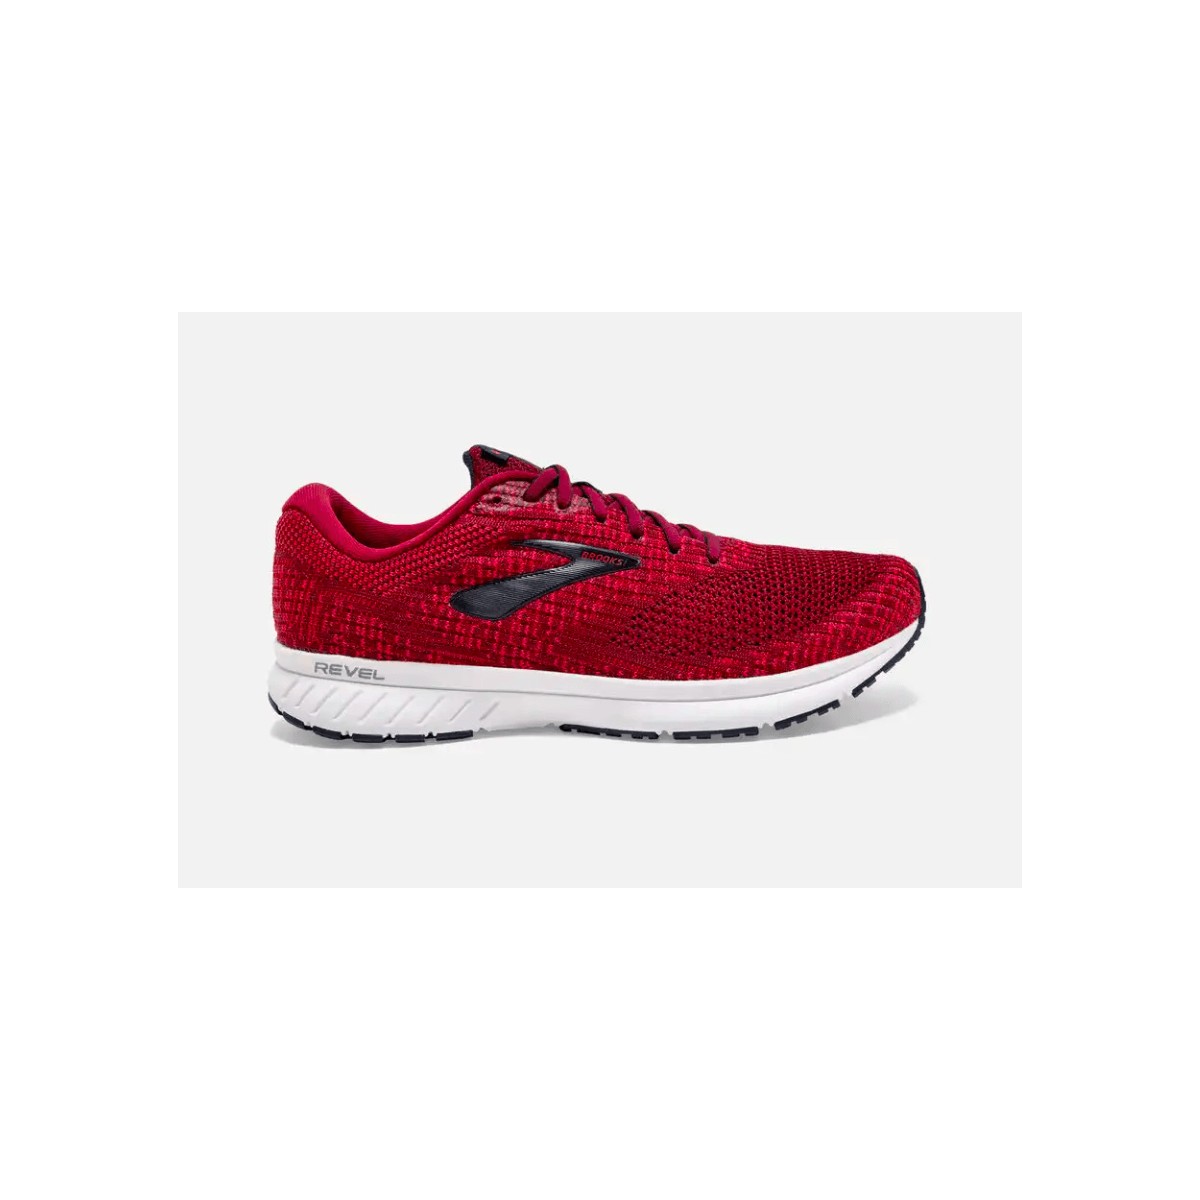 Brooks Revel 3 Men's Running Shoes Red AW19